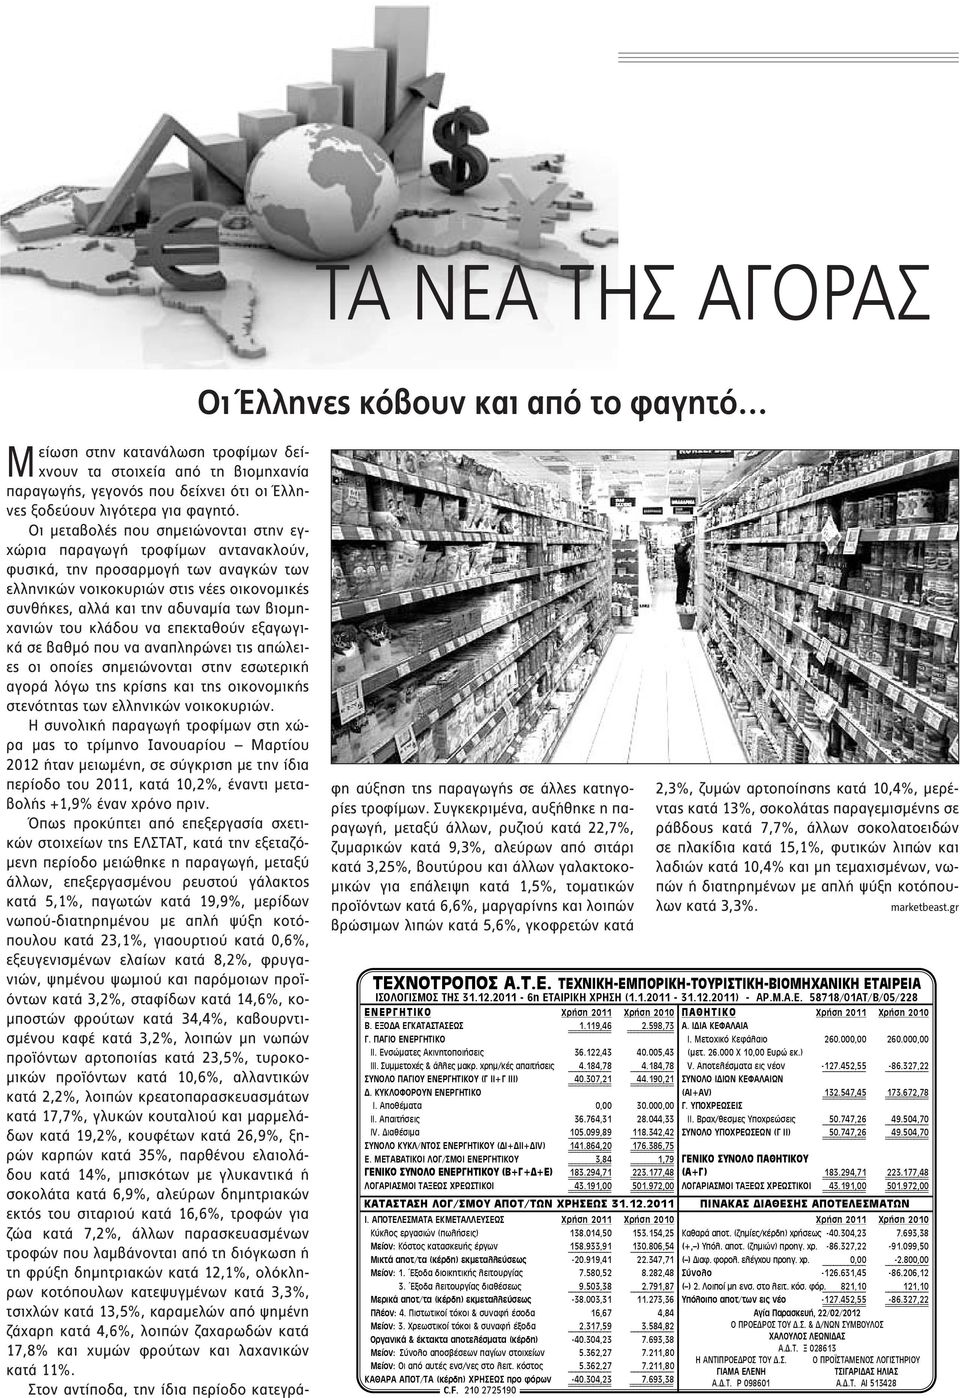 Οι μεταβολές που σημειώνονται στην εγχώρια παραγωγή τροφίμων αντανακλούν, φυσικά, την προσαρμογή των αναγκών των ελληνικών νοικοκυριών στις νέες οικονομικές συνθήκες, αλλά και την αδυναμία των